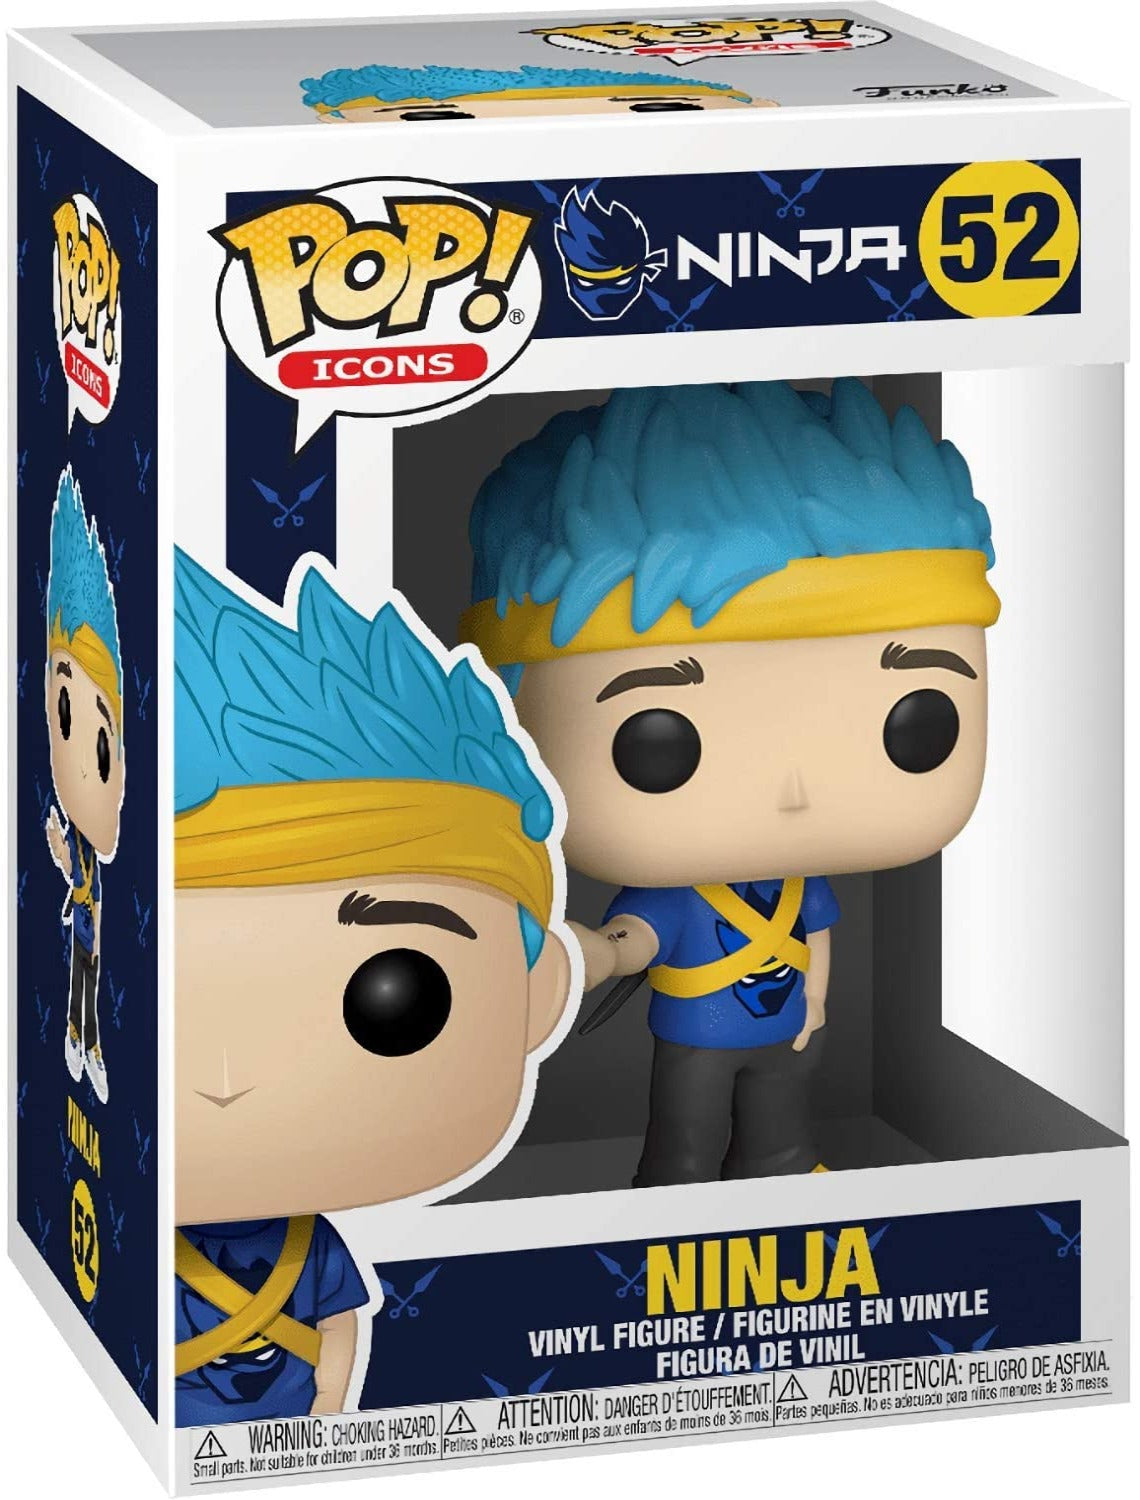 Ninja Pop! Vinyl Figure (52)